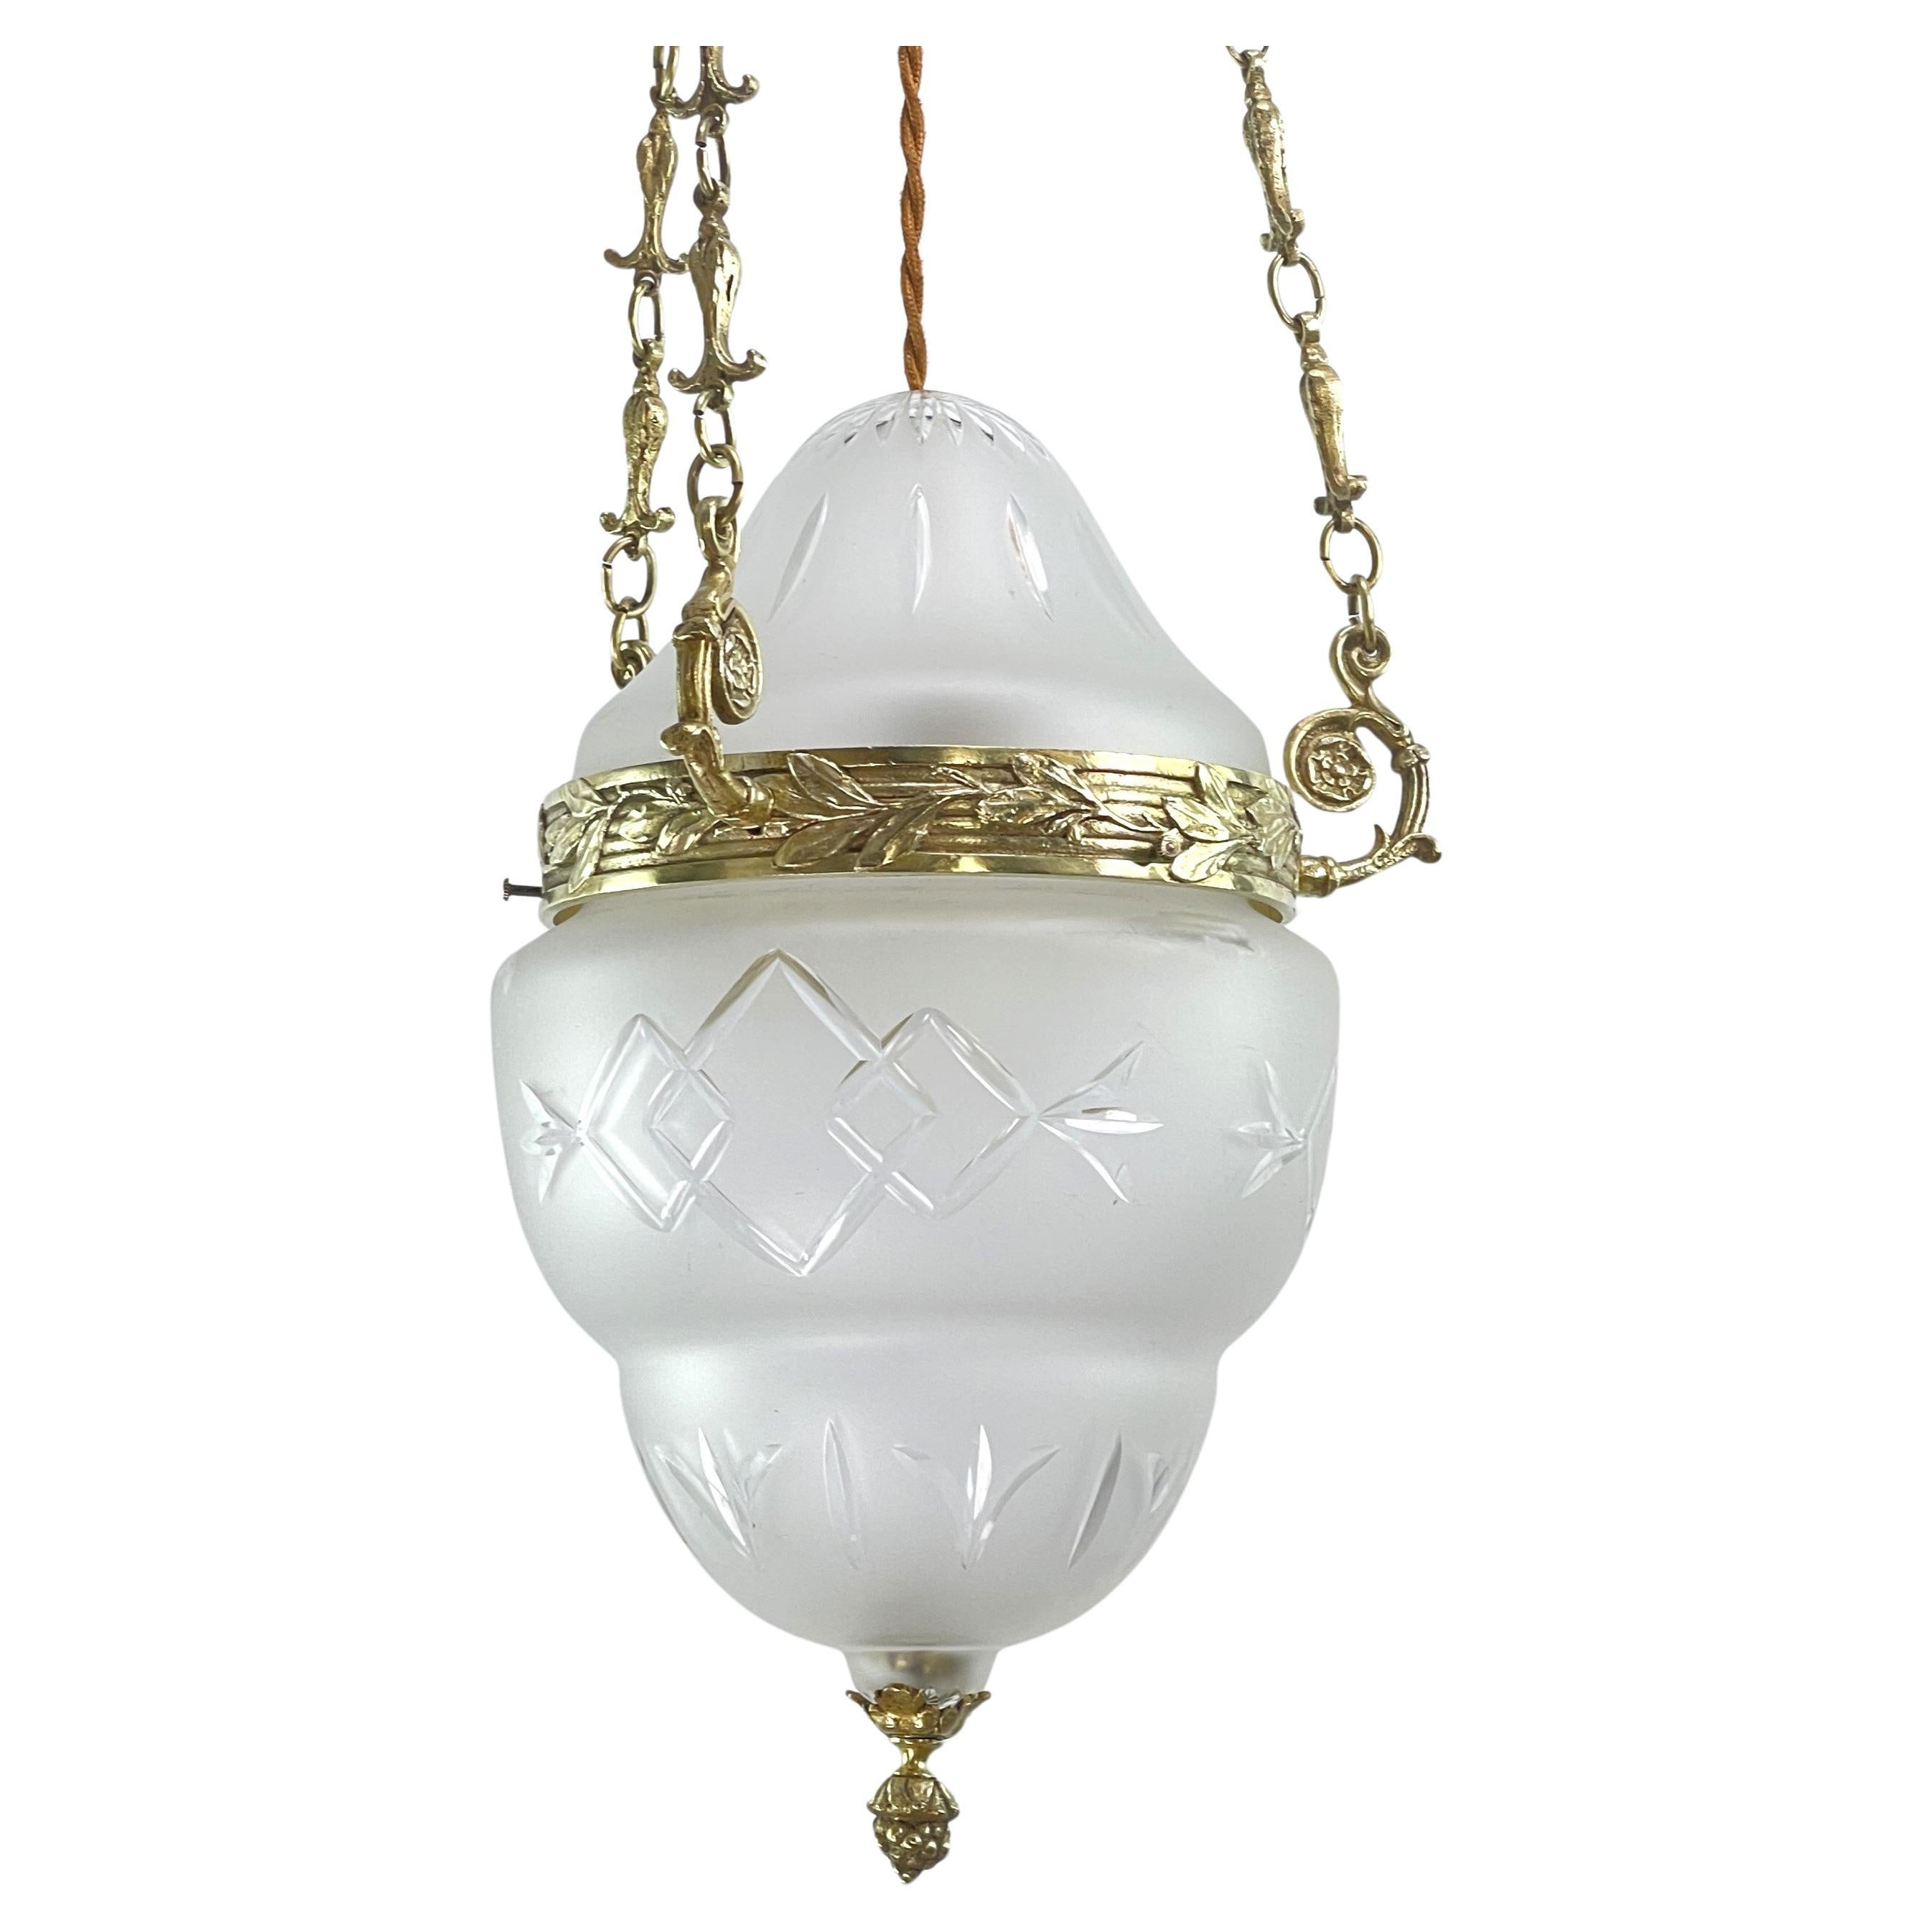 Art Nouveau Ceiling Lamp Bronze, Hanging Lamp Teardrop Shape, 1900s